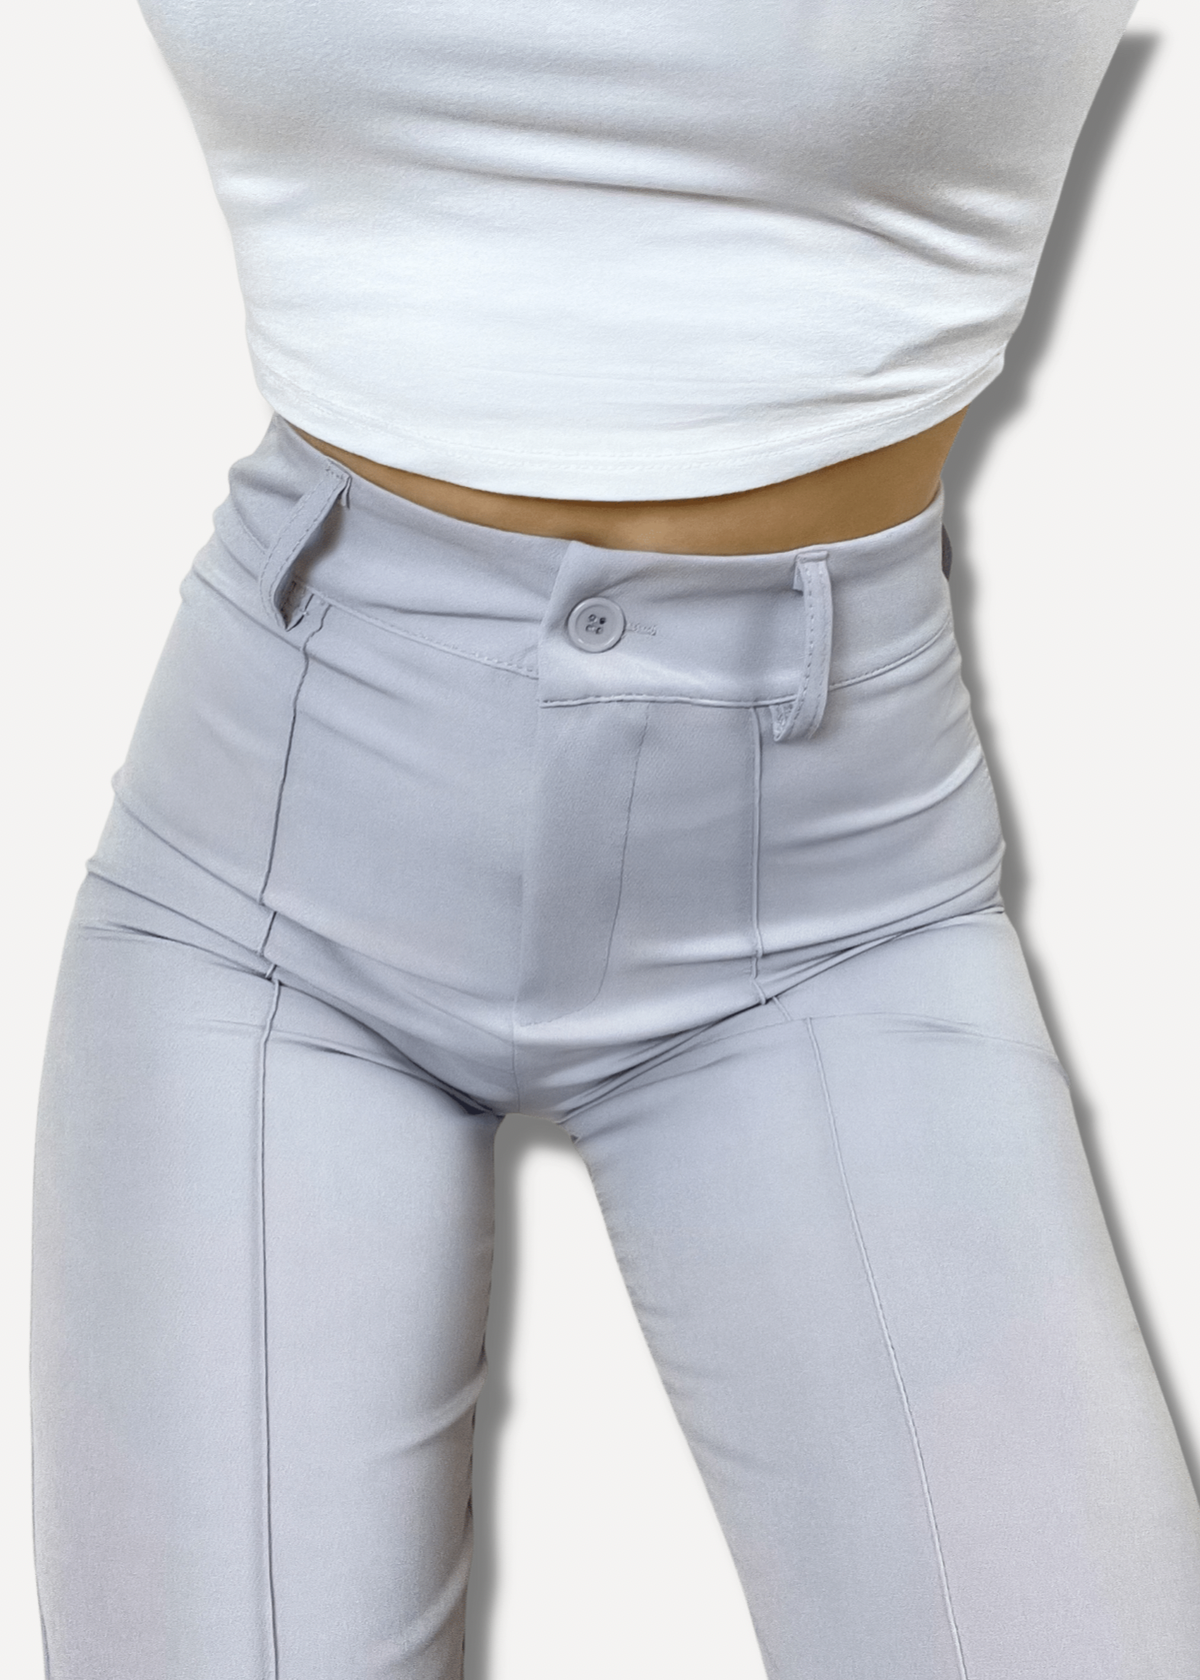 Pantalon droit avec pliage gris clair (TALL)